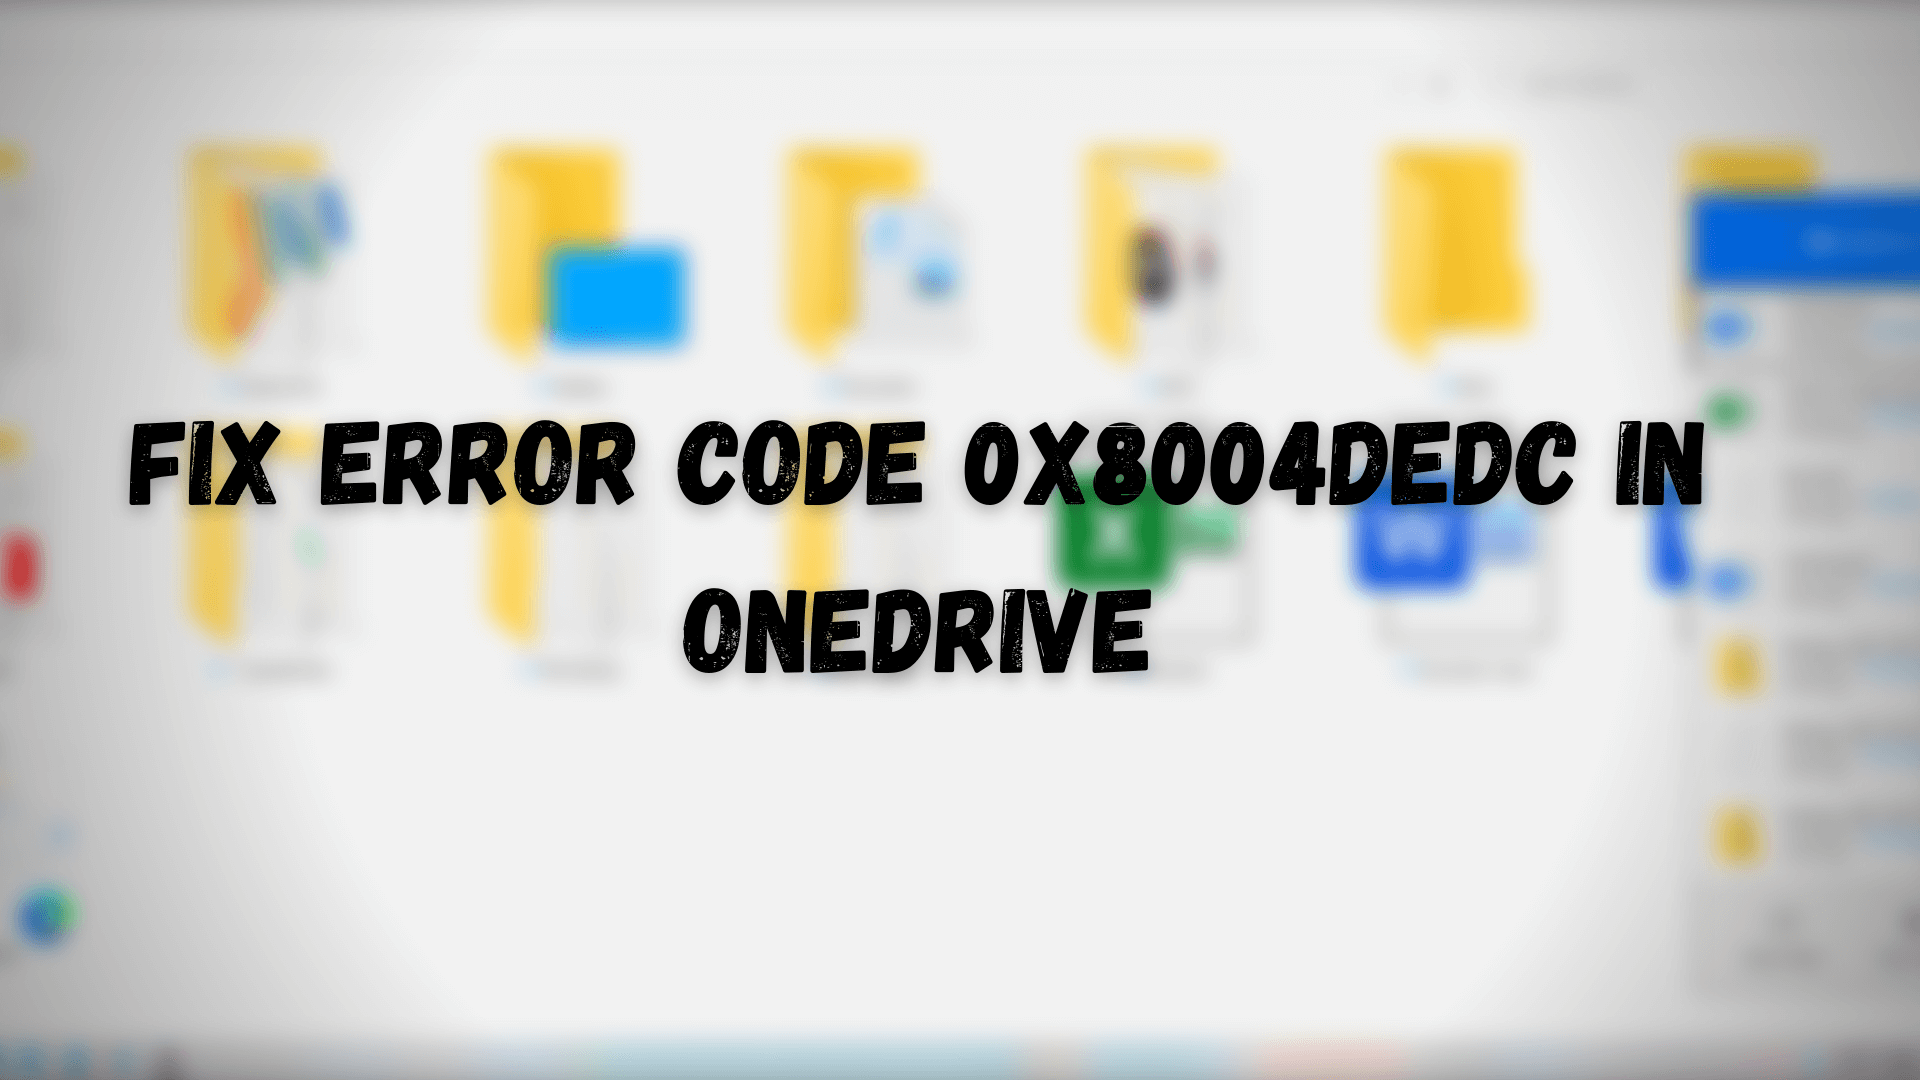 Fix Error Code 0x8004dedc in OneDrive (Geo Location Problem) Fix-Error-Code-0x8004dedc-in-OneDrive.png